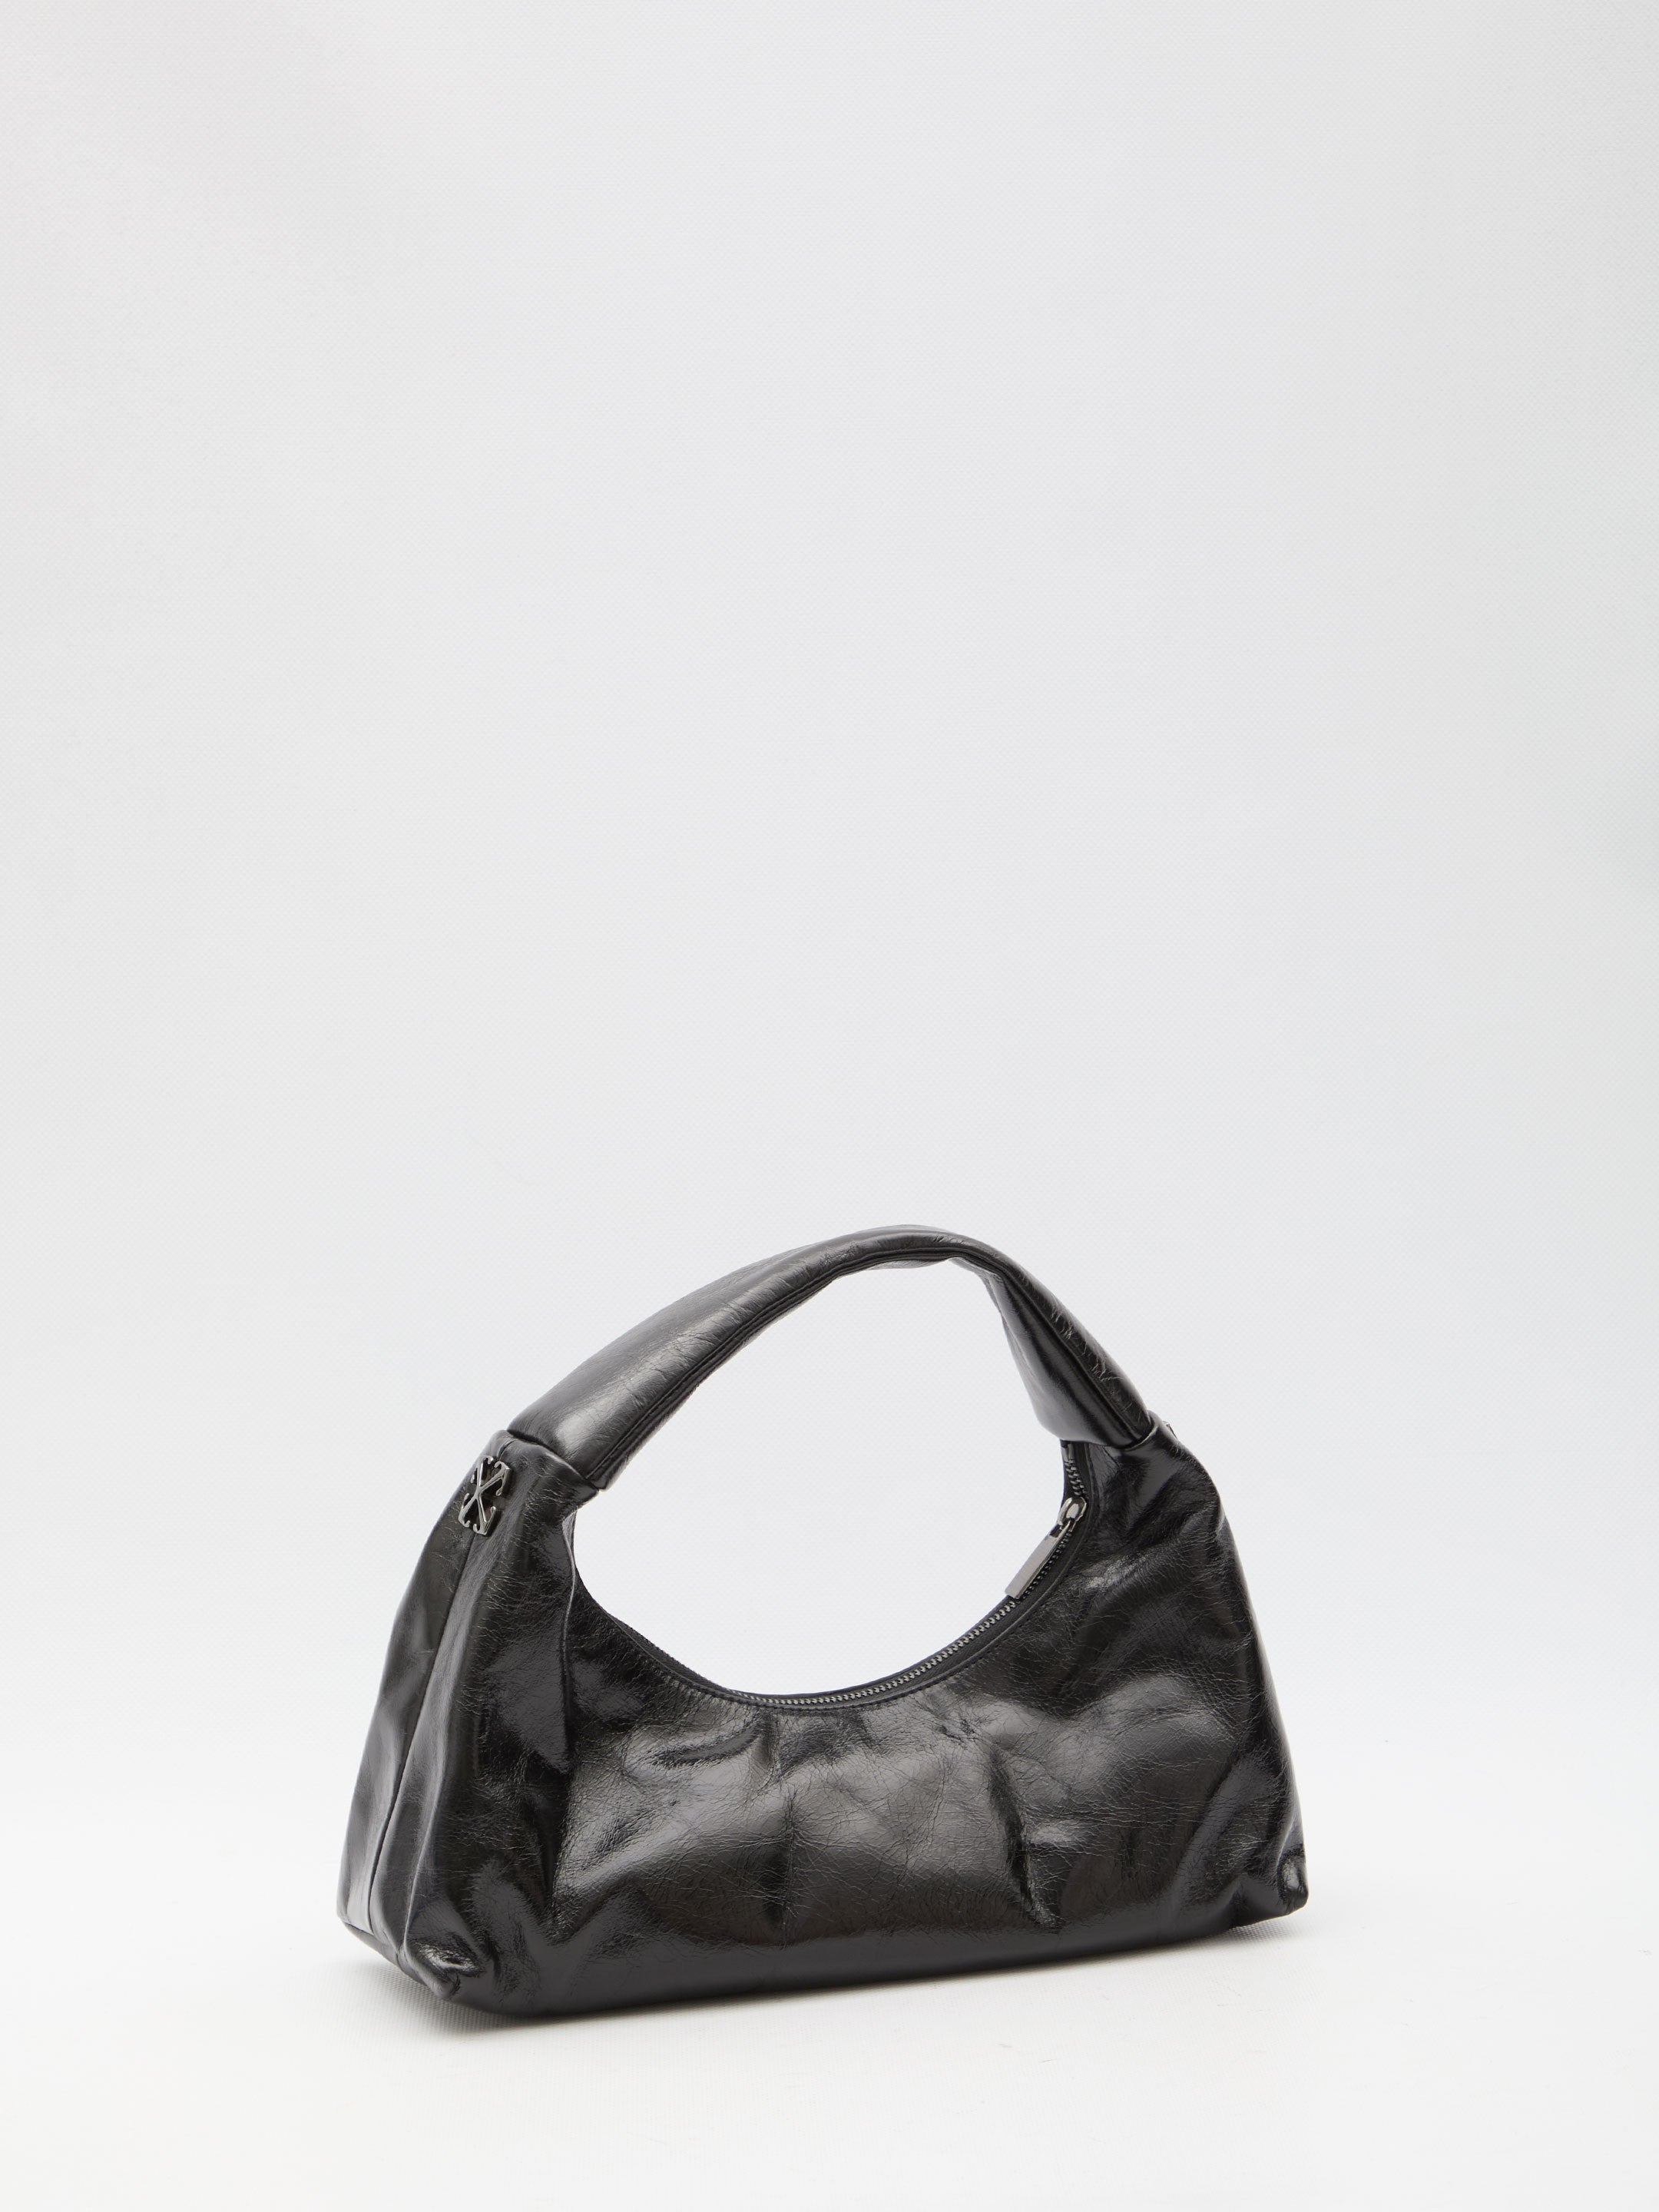 OFF-WHITE-OUTLET-SALE-Arcade-shoulder-bag-Taschen-QT-BLACK-ARCHIVE-COLLECTION-2.jpg